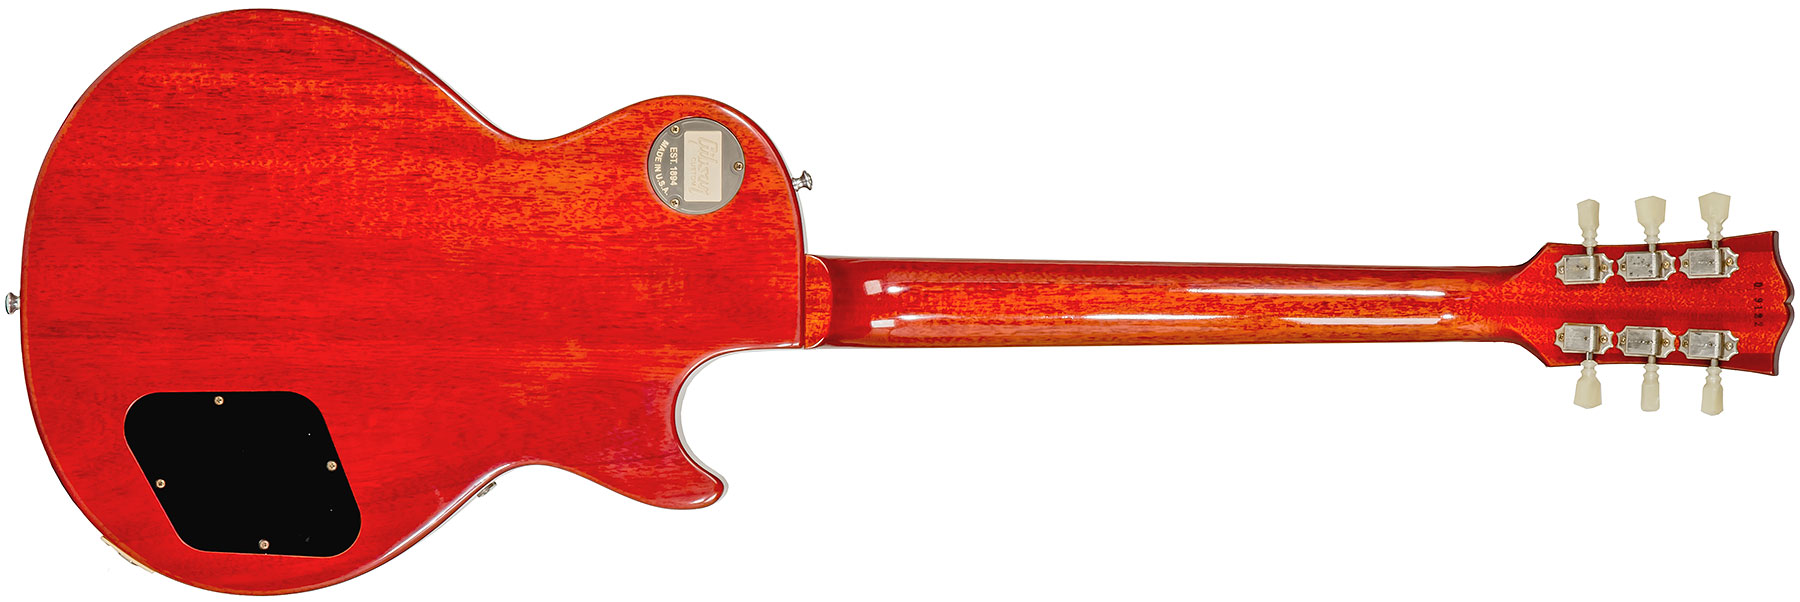 Gibson Custom Shop Les Paul Standard 1960 Reissue Lh Gaucher 2h Ht Rw #09122 - Vos Tangerine Burst - Linkshandige elektrische gitaar - Variation 1